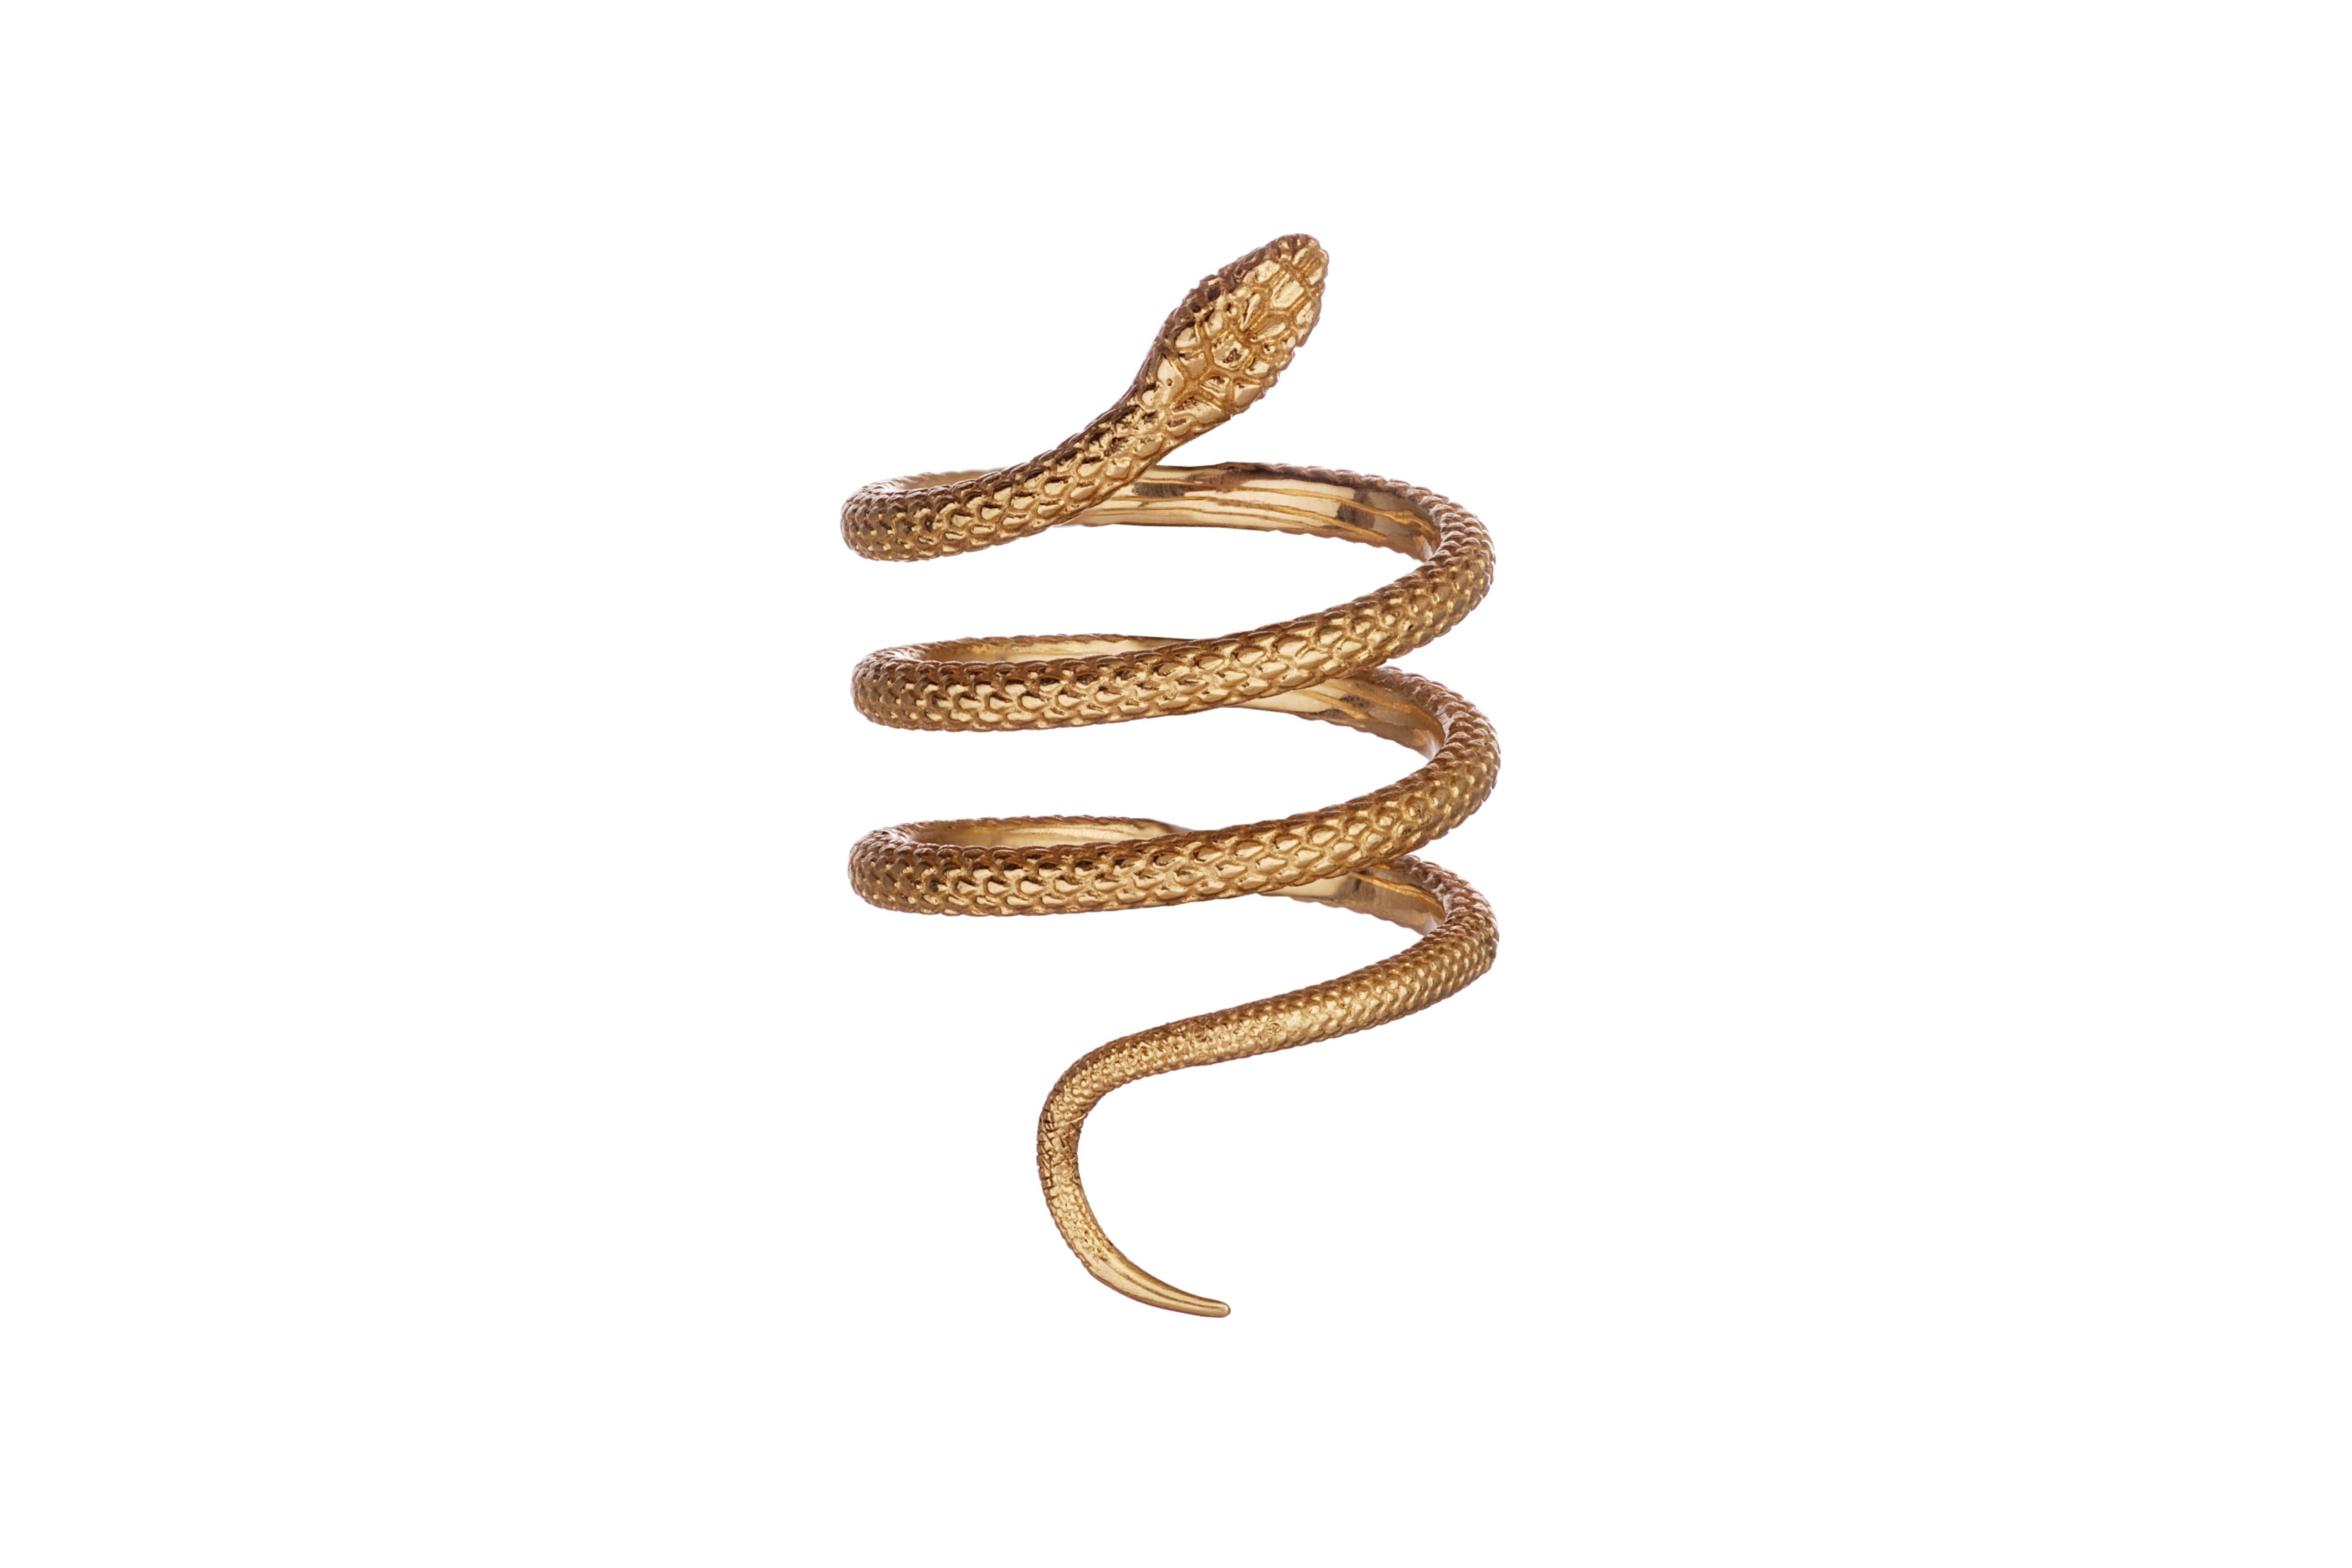 Les serpents en or rose, en or blanc et en or jaune de 18kt d'OUROBOROS qui se vissent ensemble pour être portés comme un seul ou séparément. En or jaune, rose et blanc.

Ces anneaux sont disponibles en plusieurs tailles. Veuillez contacter le